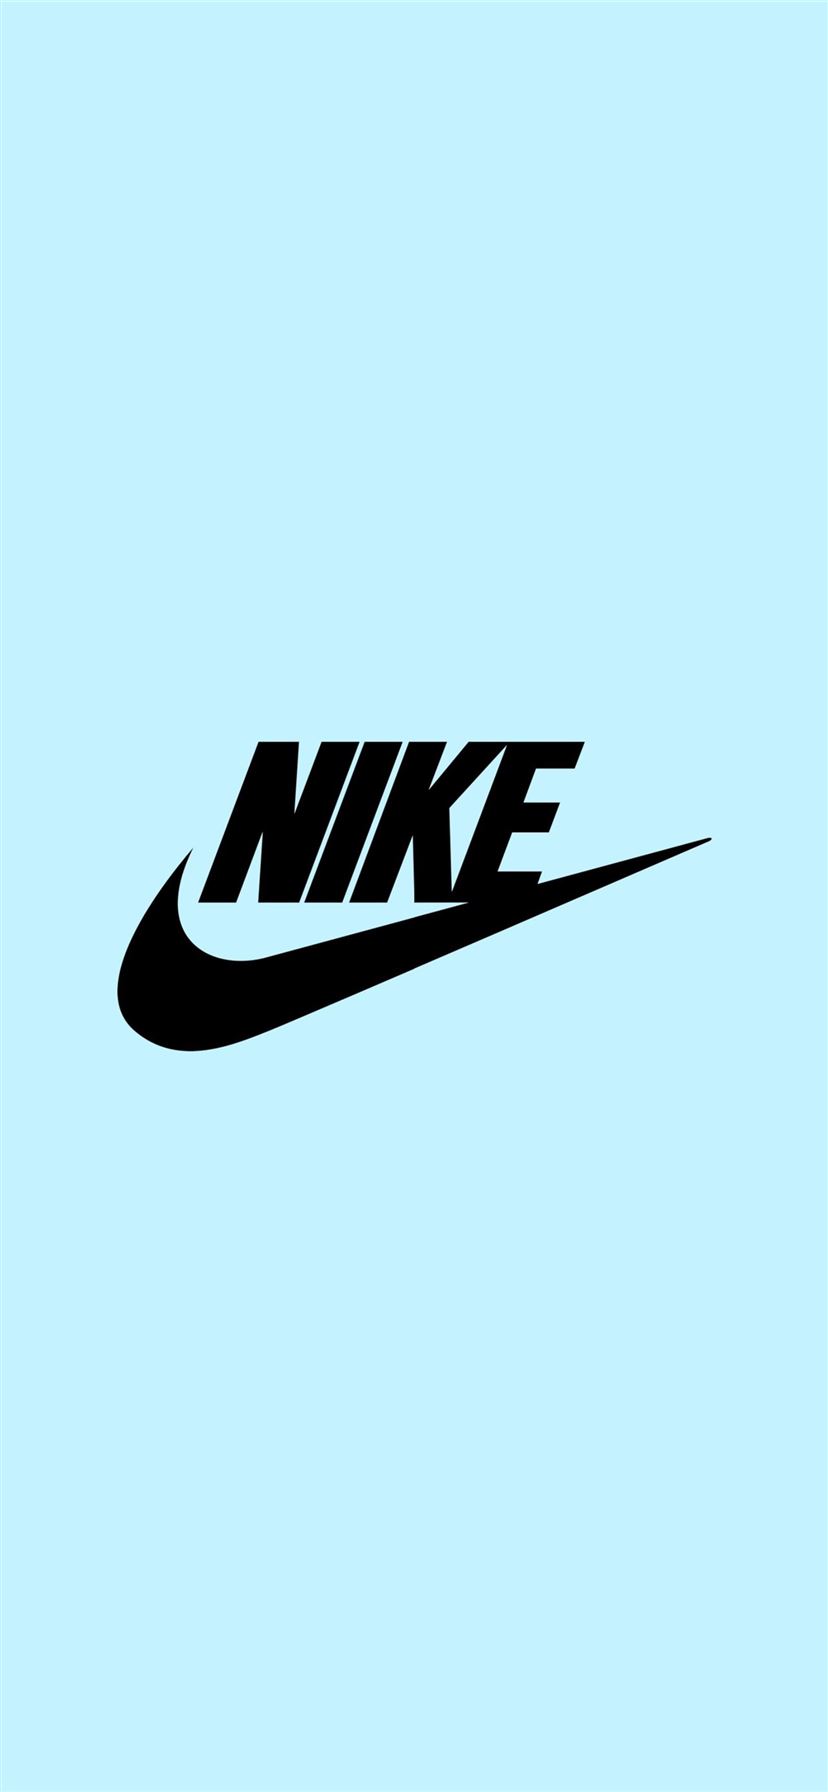 toma una foto hotel apelación Nike logo blue iPhone Wallpapers Free Download